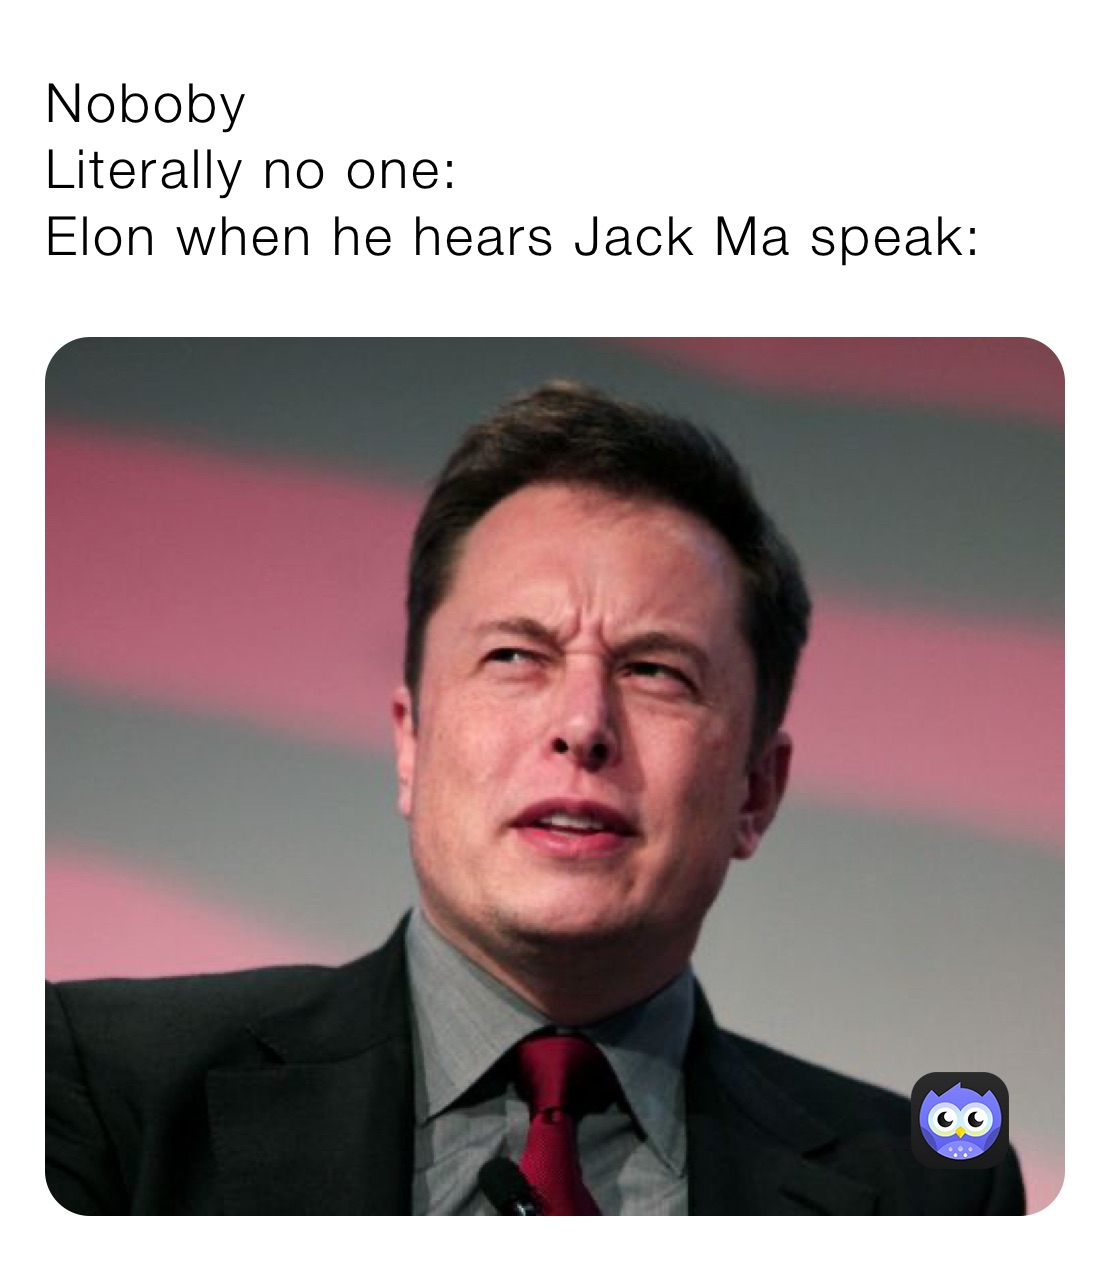 Noboby
Literally no one:
Elon when he hears Jack Ma speak: